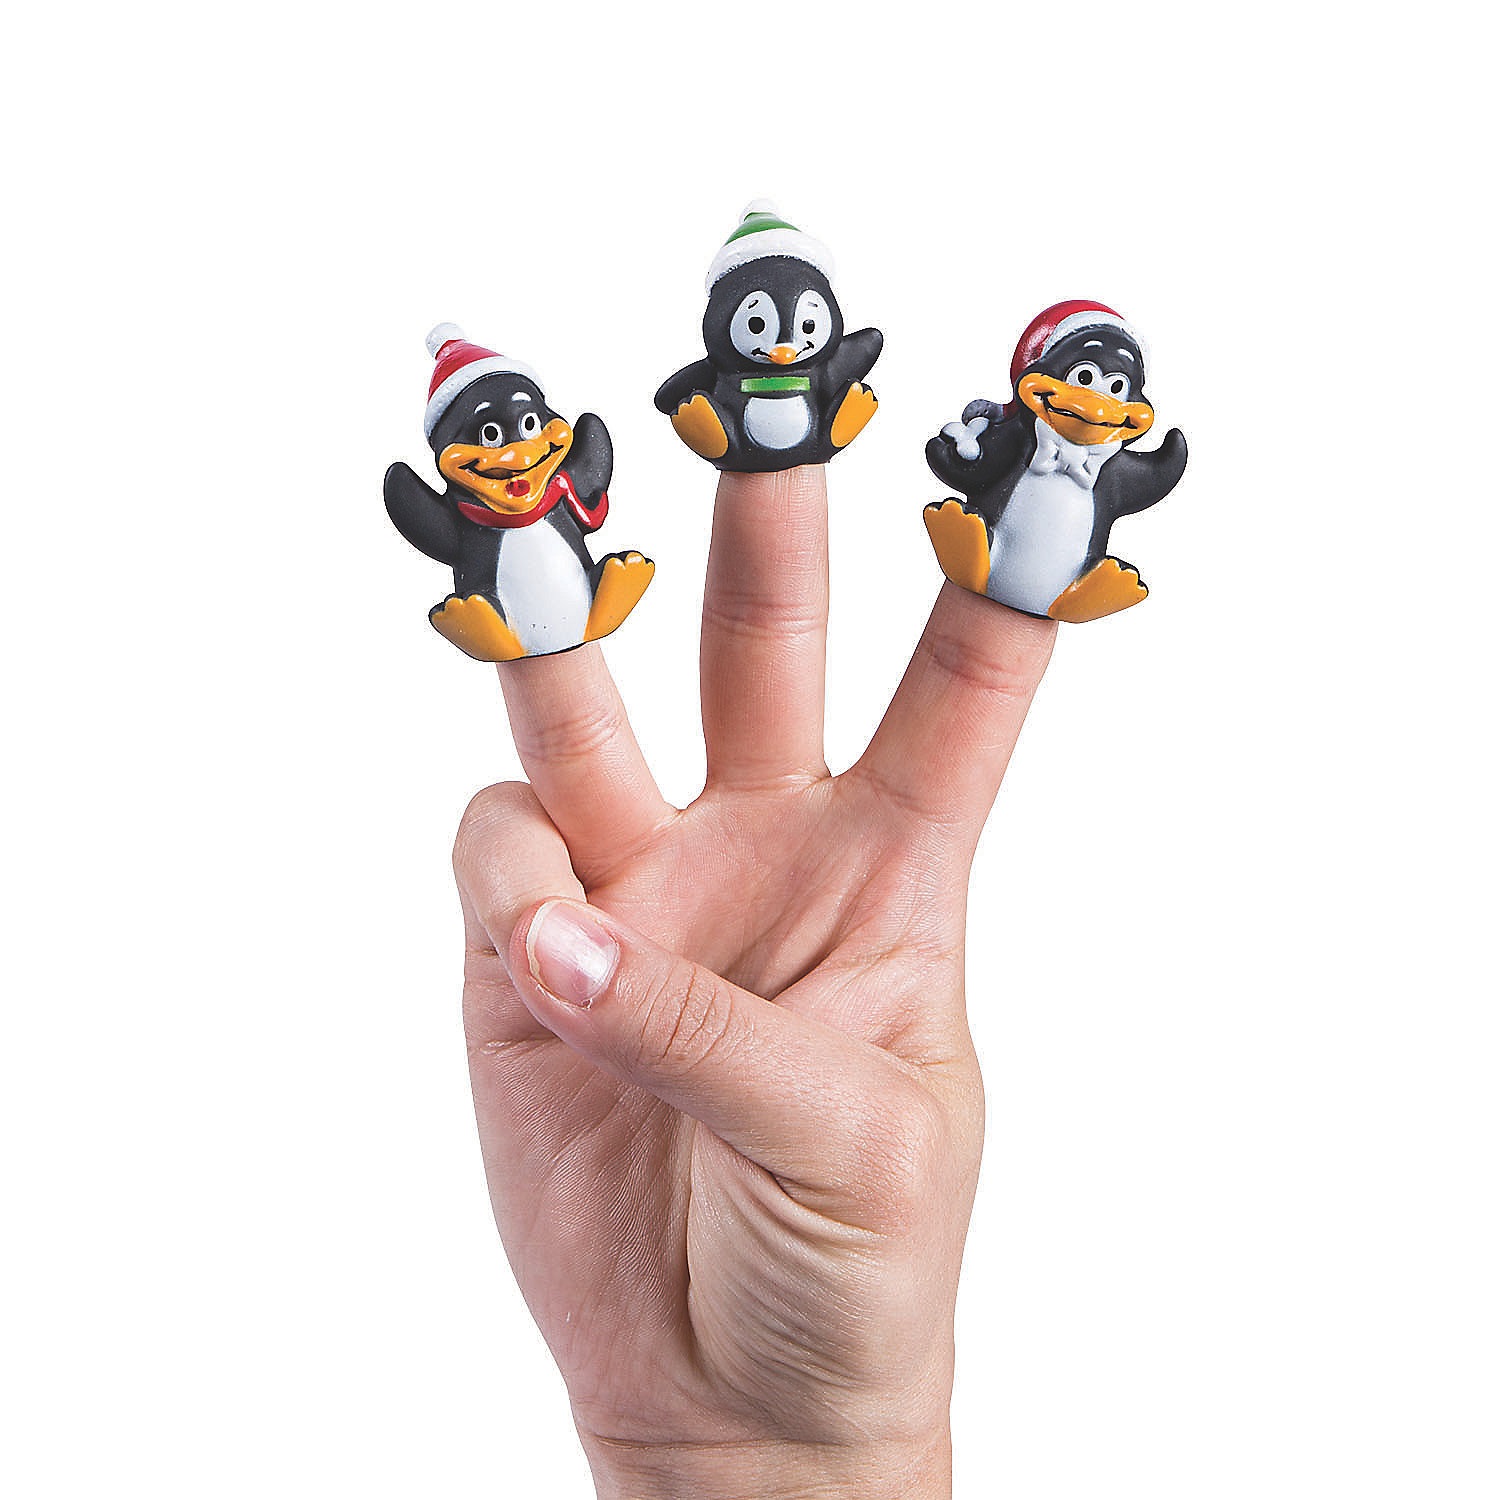 penguin-finger-puppets-24-pc-_4_2404a